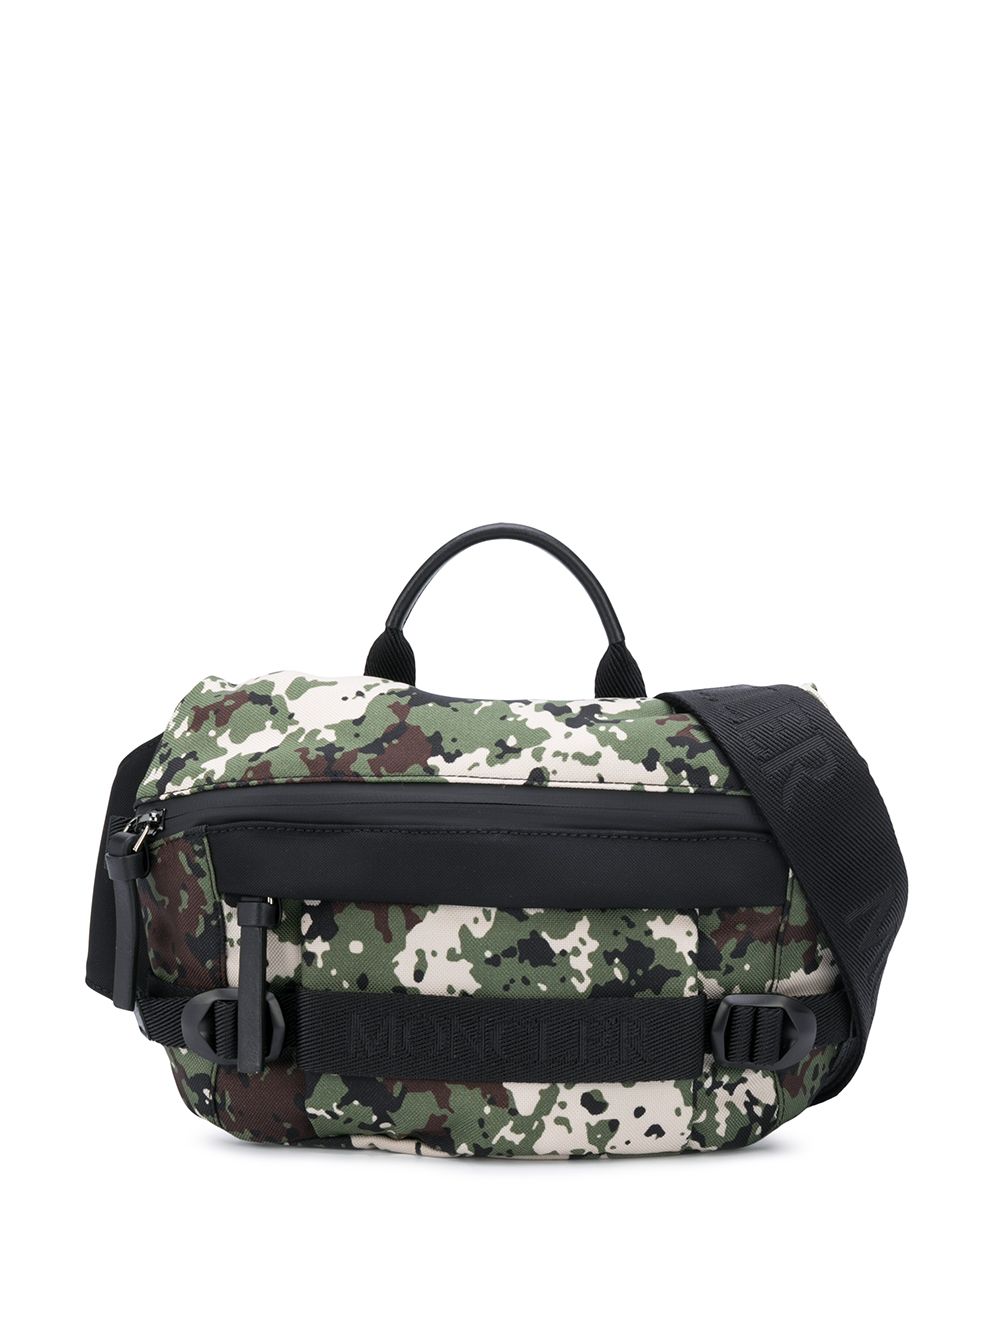 Argens camouflage belt bag